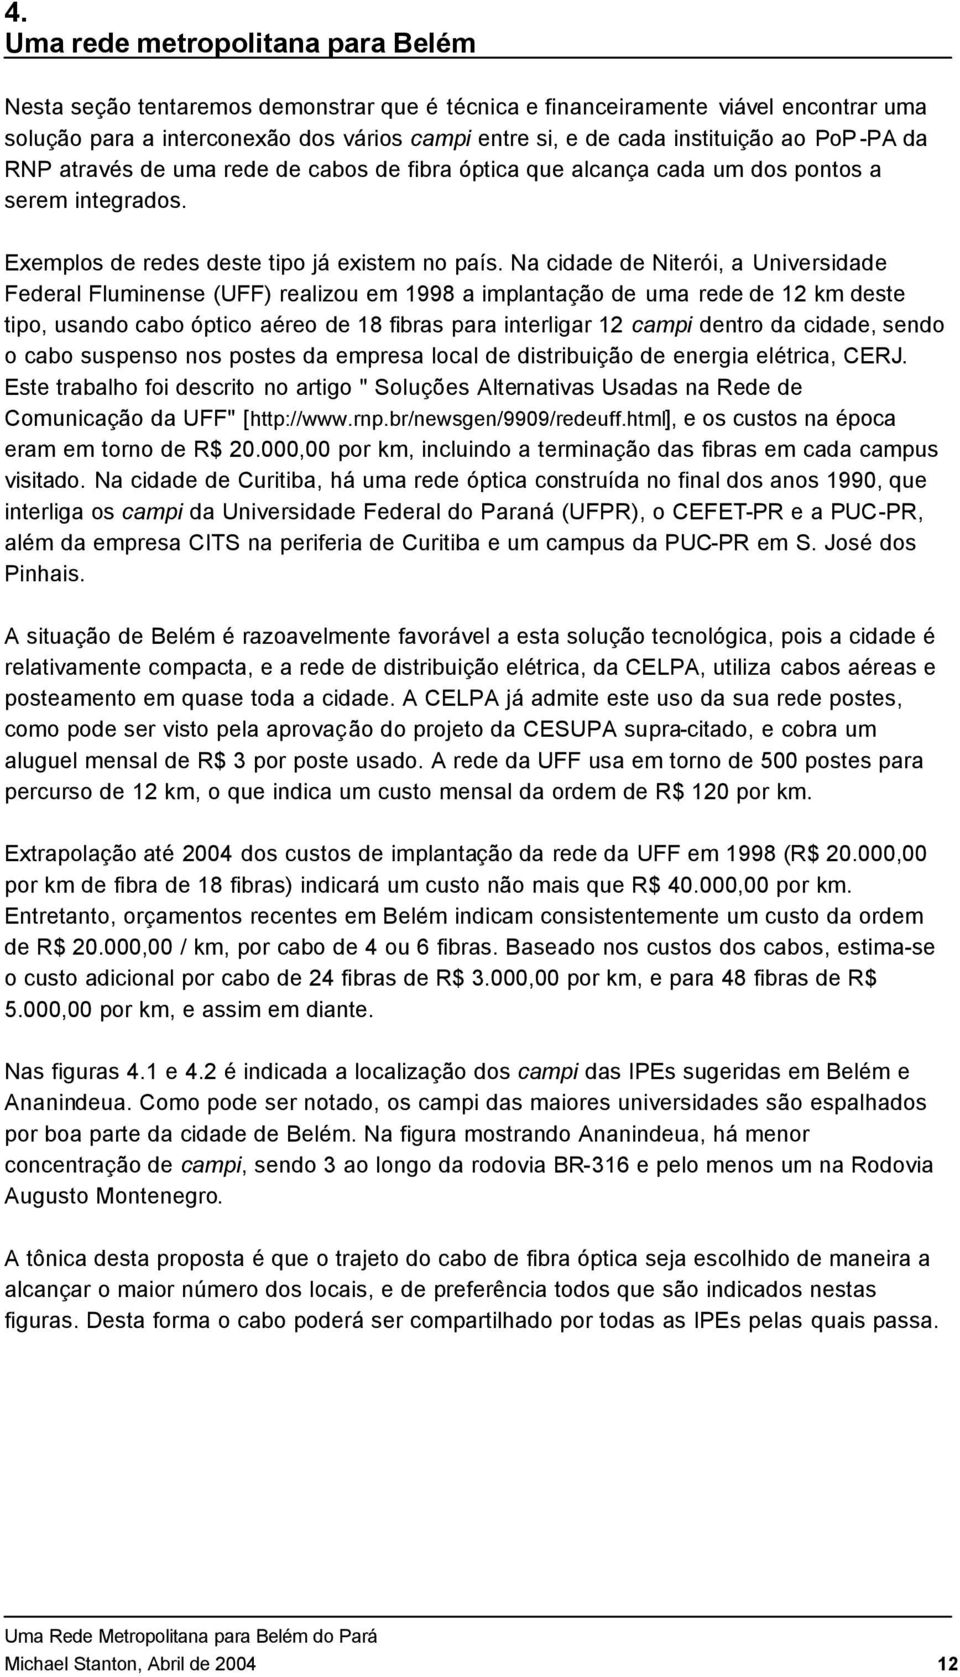 Na cidade de Niterói, a Universidade Federal Fluminense (UFF) realizou em 1998 a implantação de uma rede de 12 km deste tipo, usando cabo óptico aéreo de 18 fibras para interligar 12 campi dentro da